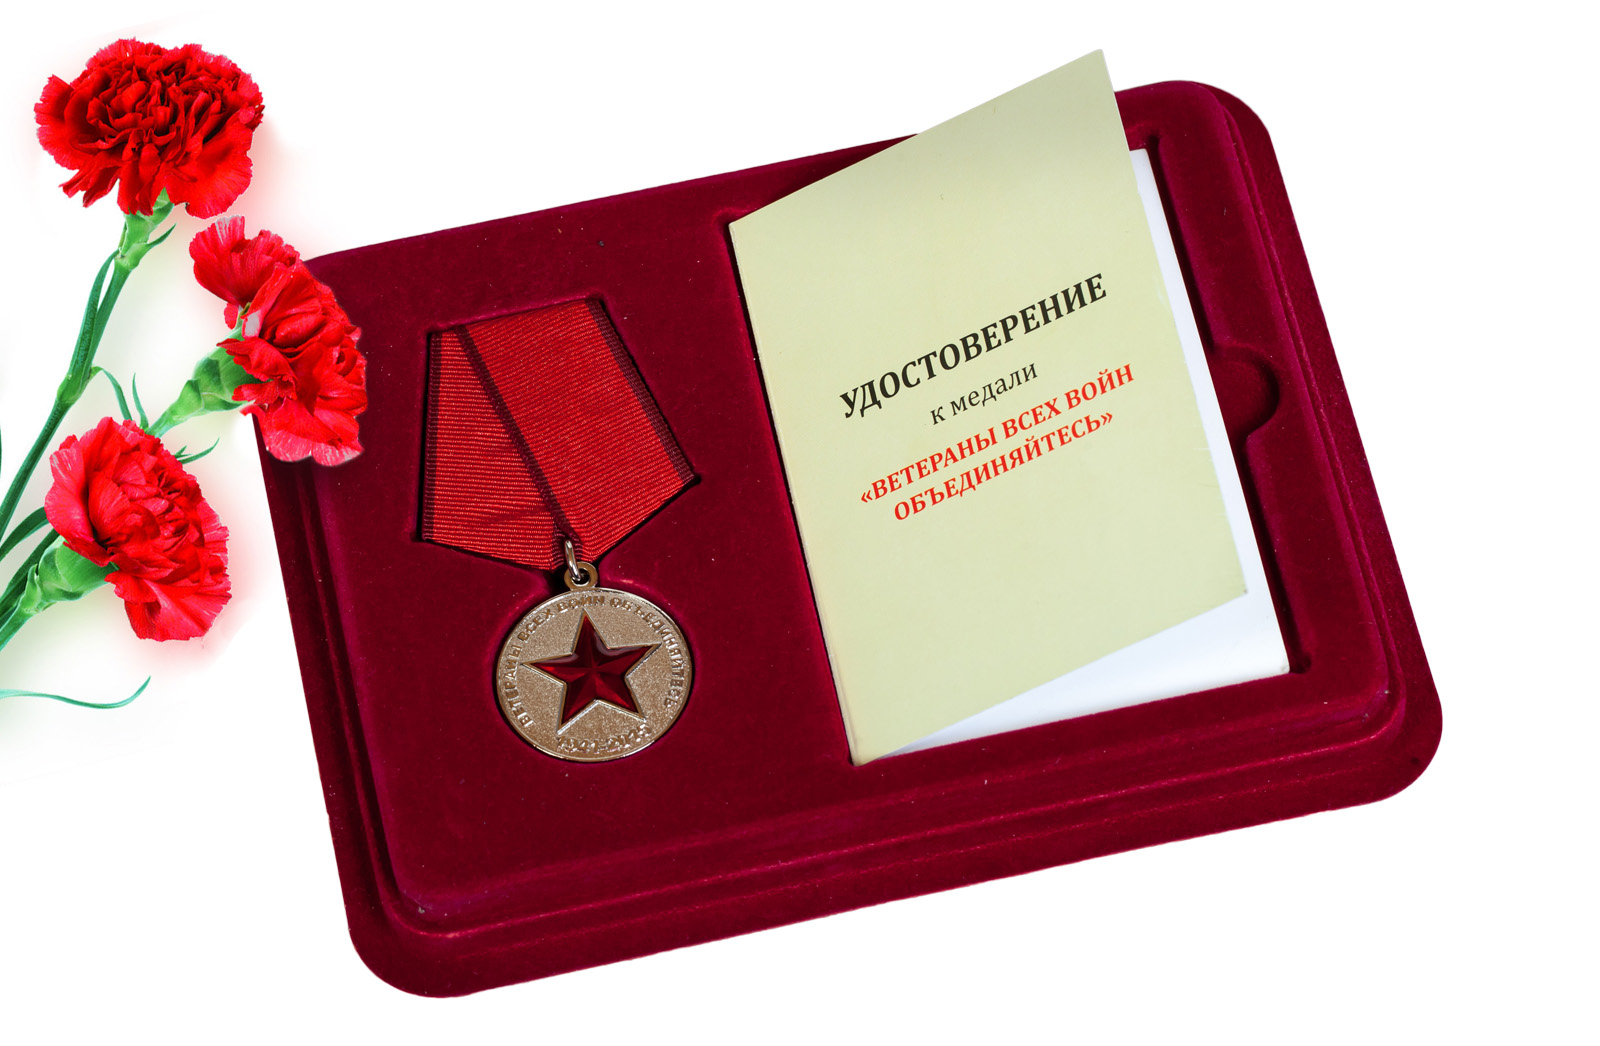 Купить медаль "Солдат своей страны" оптом или в розницу